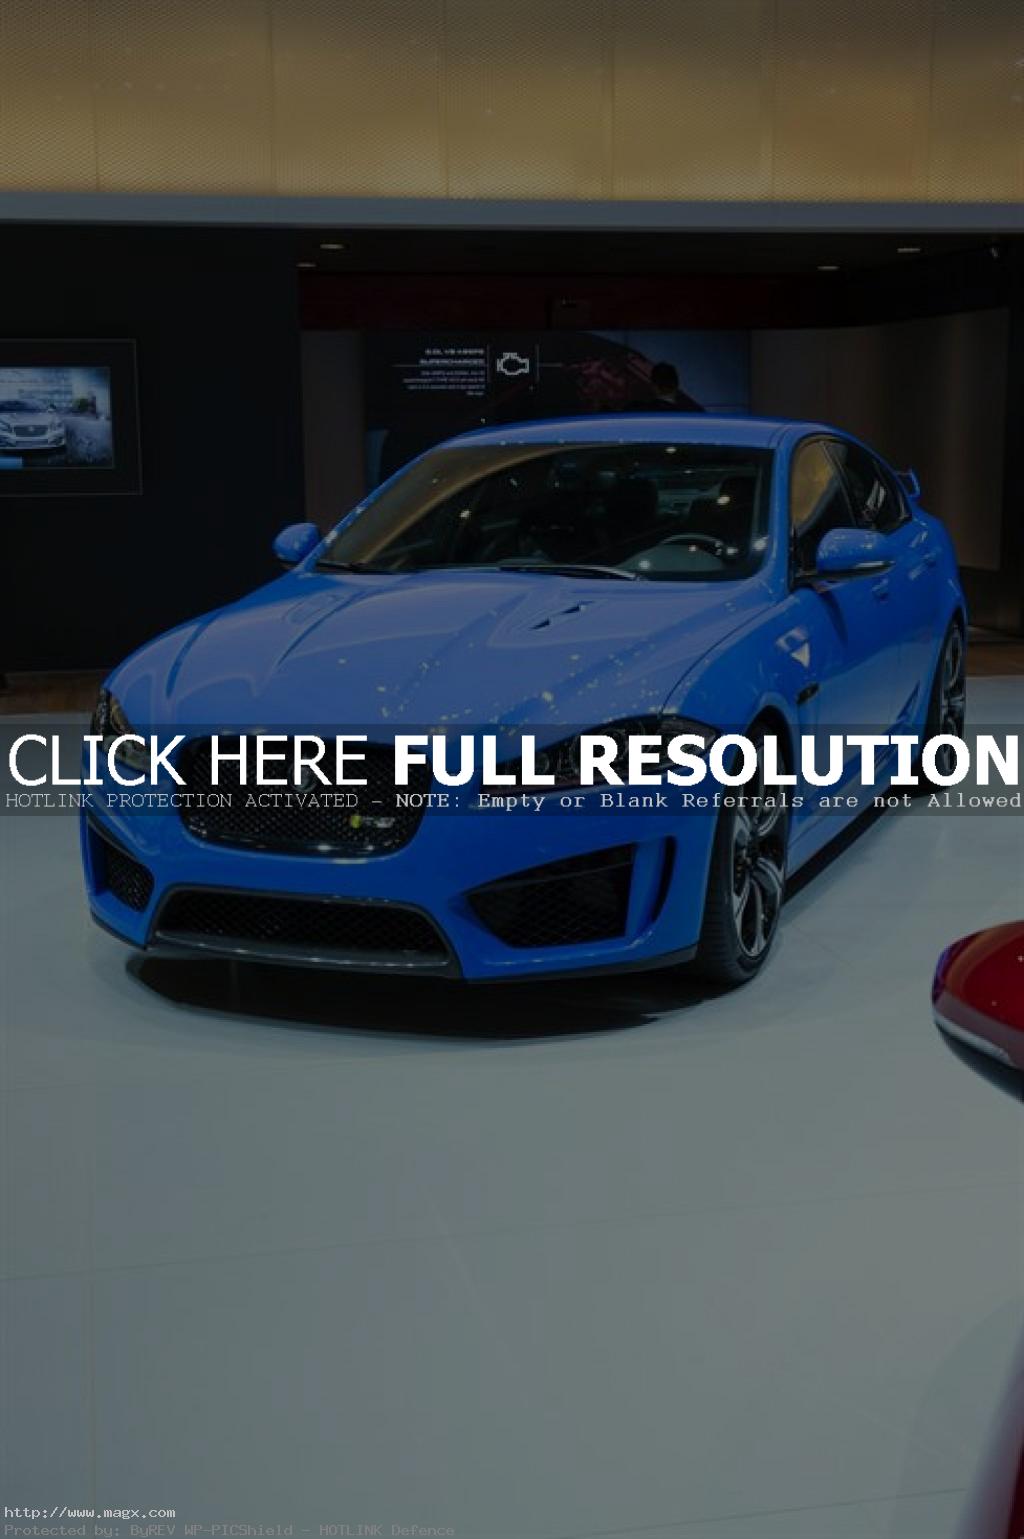 geneva motor show11 Jaguar at the 83rd International Geneva Motorshow